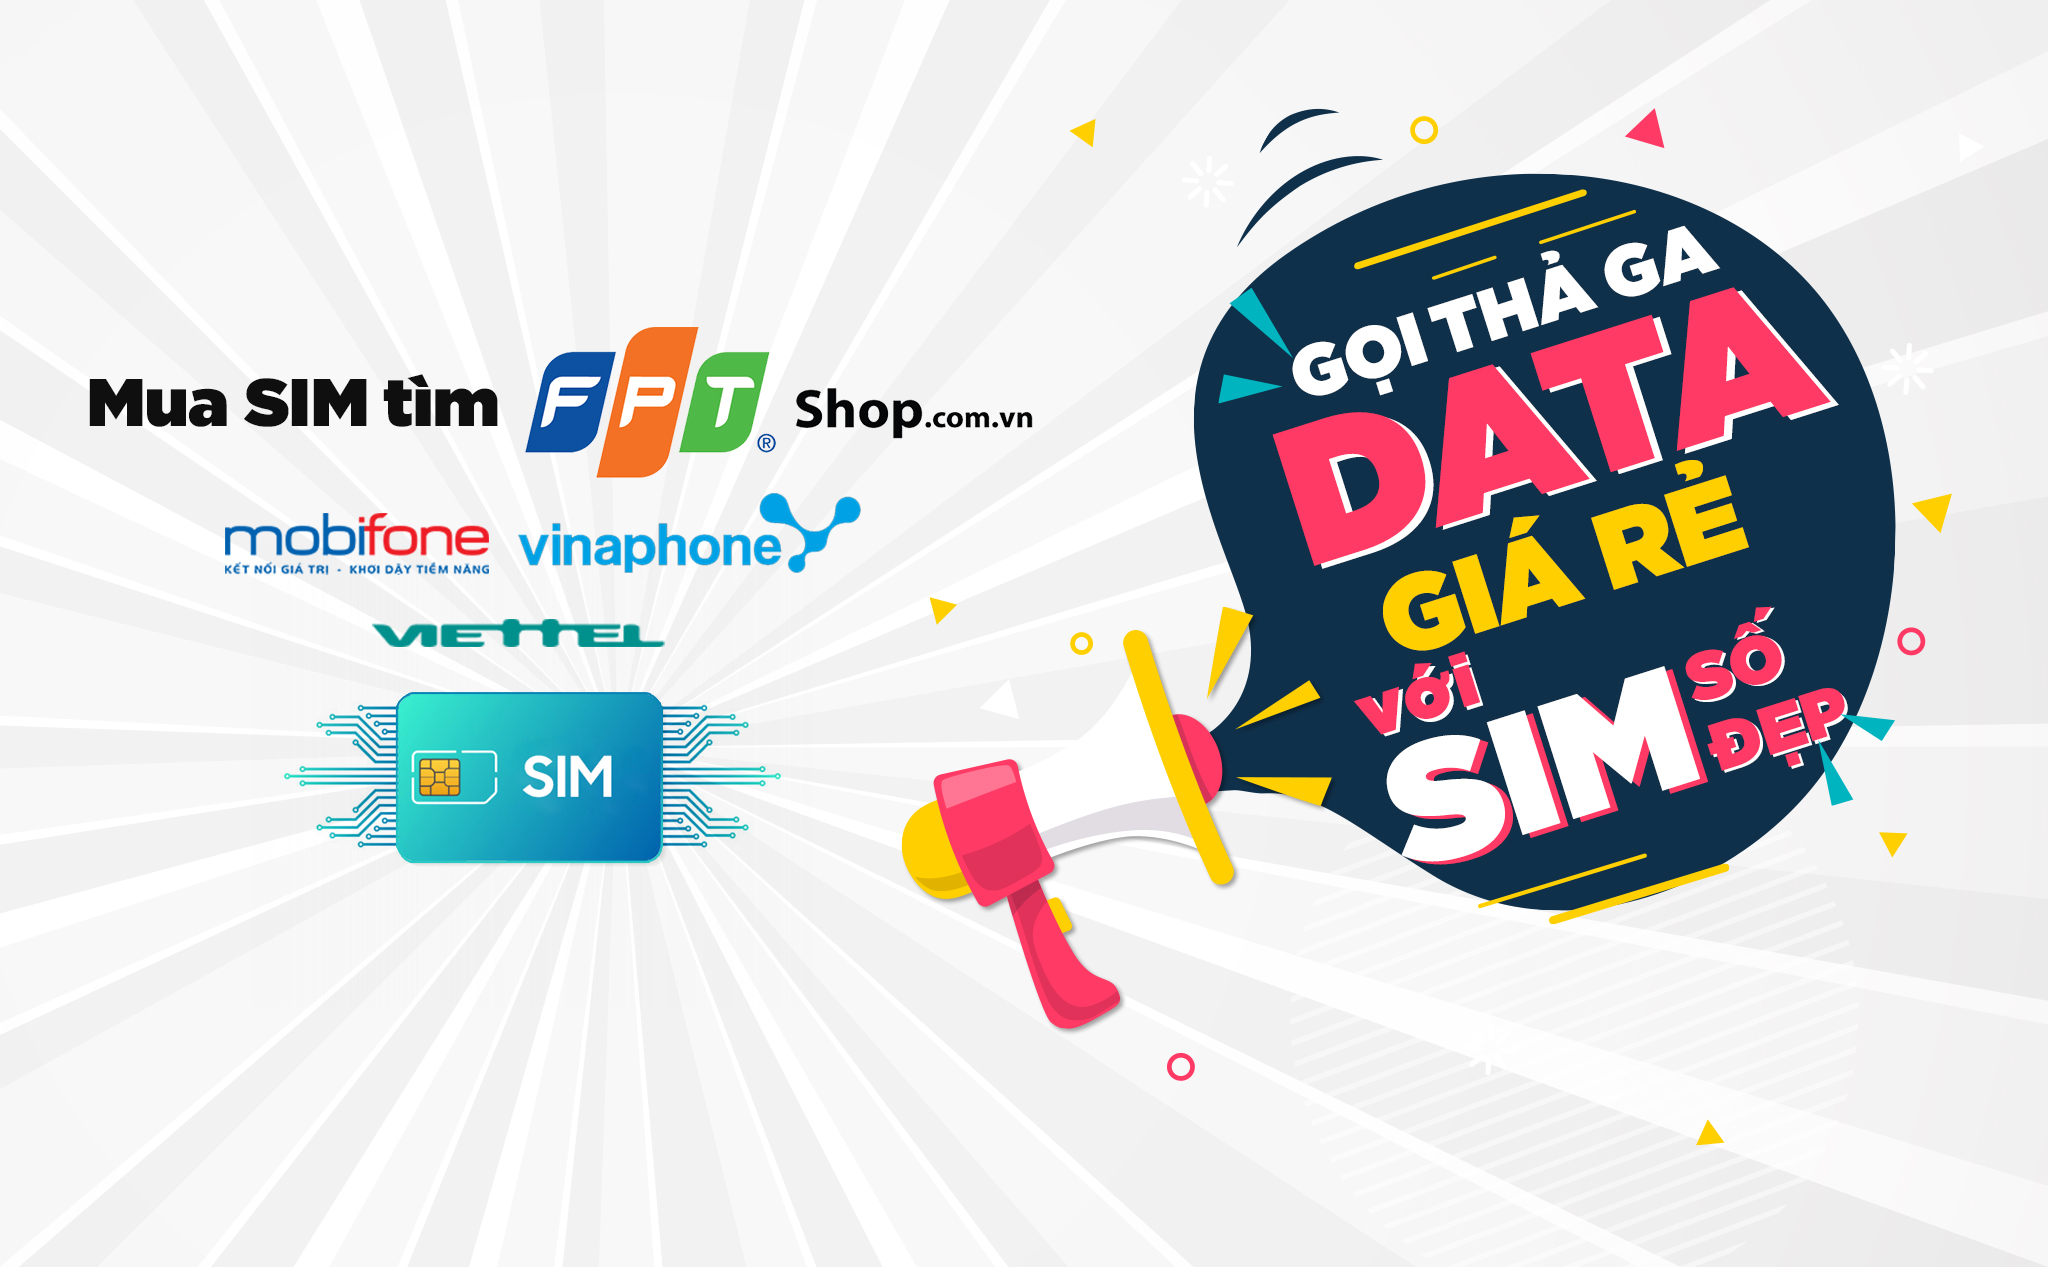 [QC] FPT Shop phối hợp cùng Viettel, Mobifone, Vinaphone tung gói cước “gọi thả ga, data siêu rẻ”